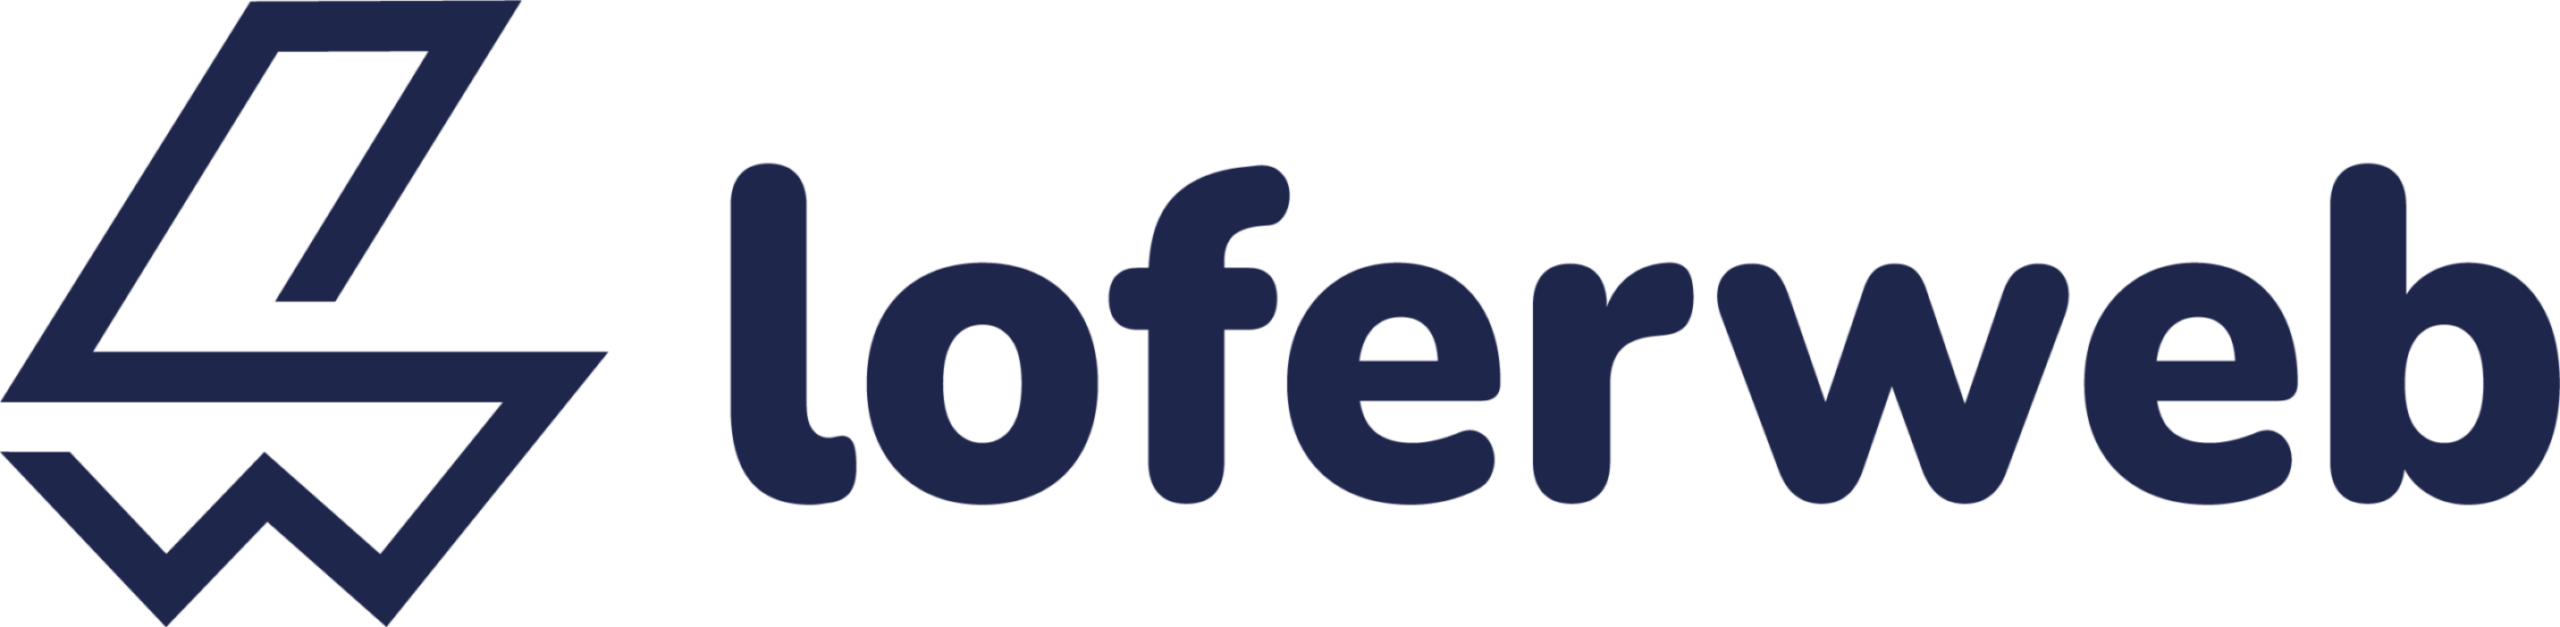 logo loferweb